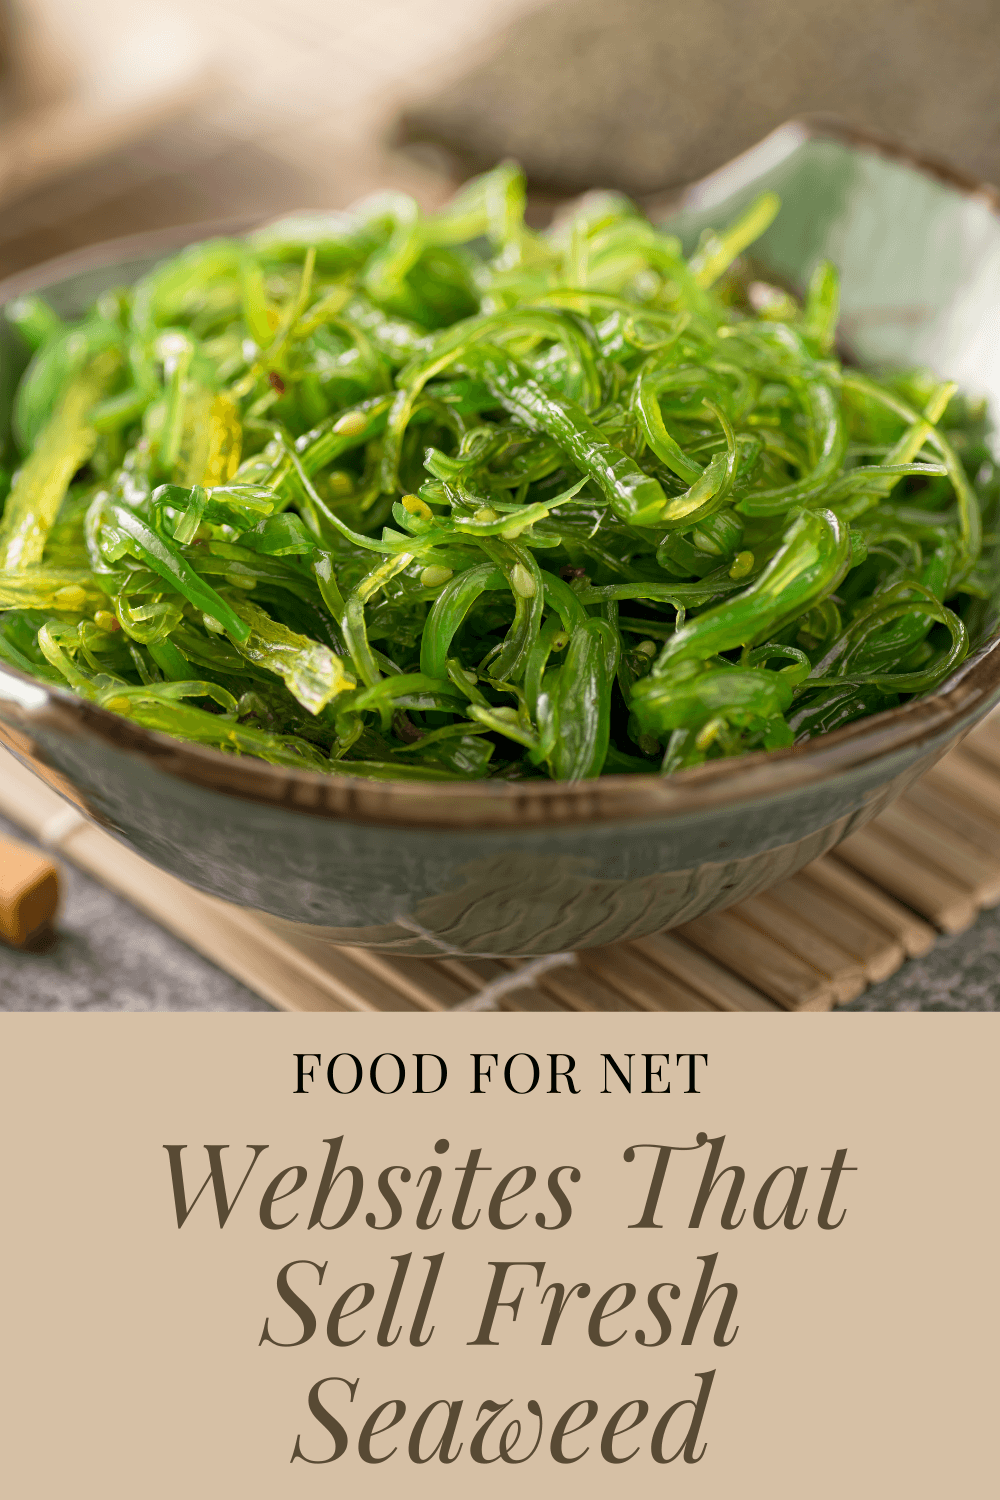 Website selling fresh seaweed